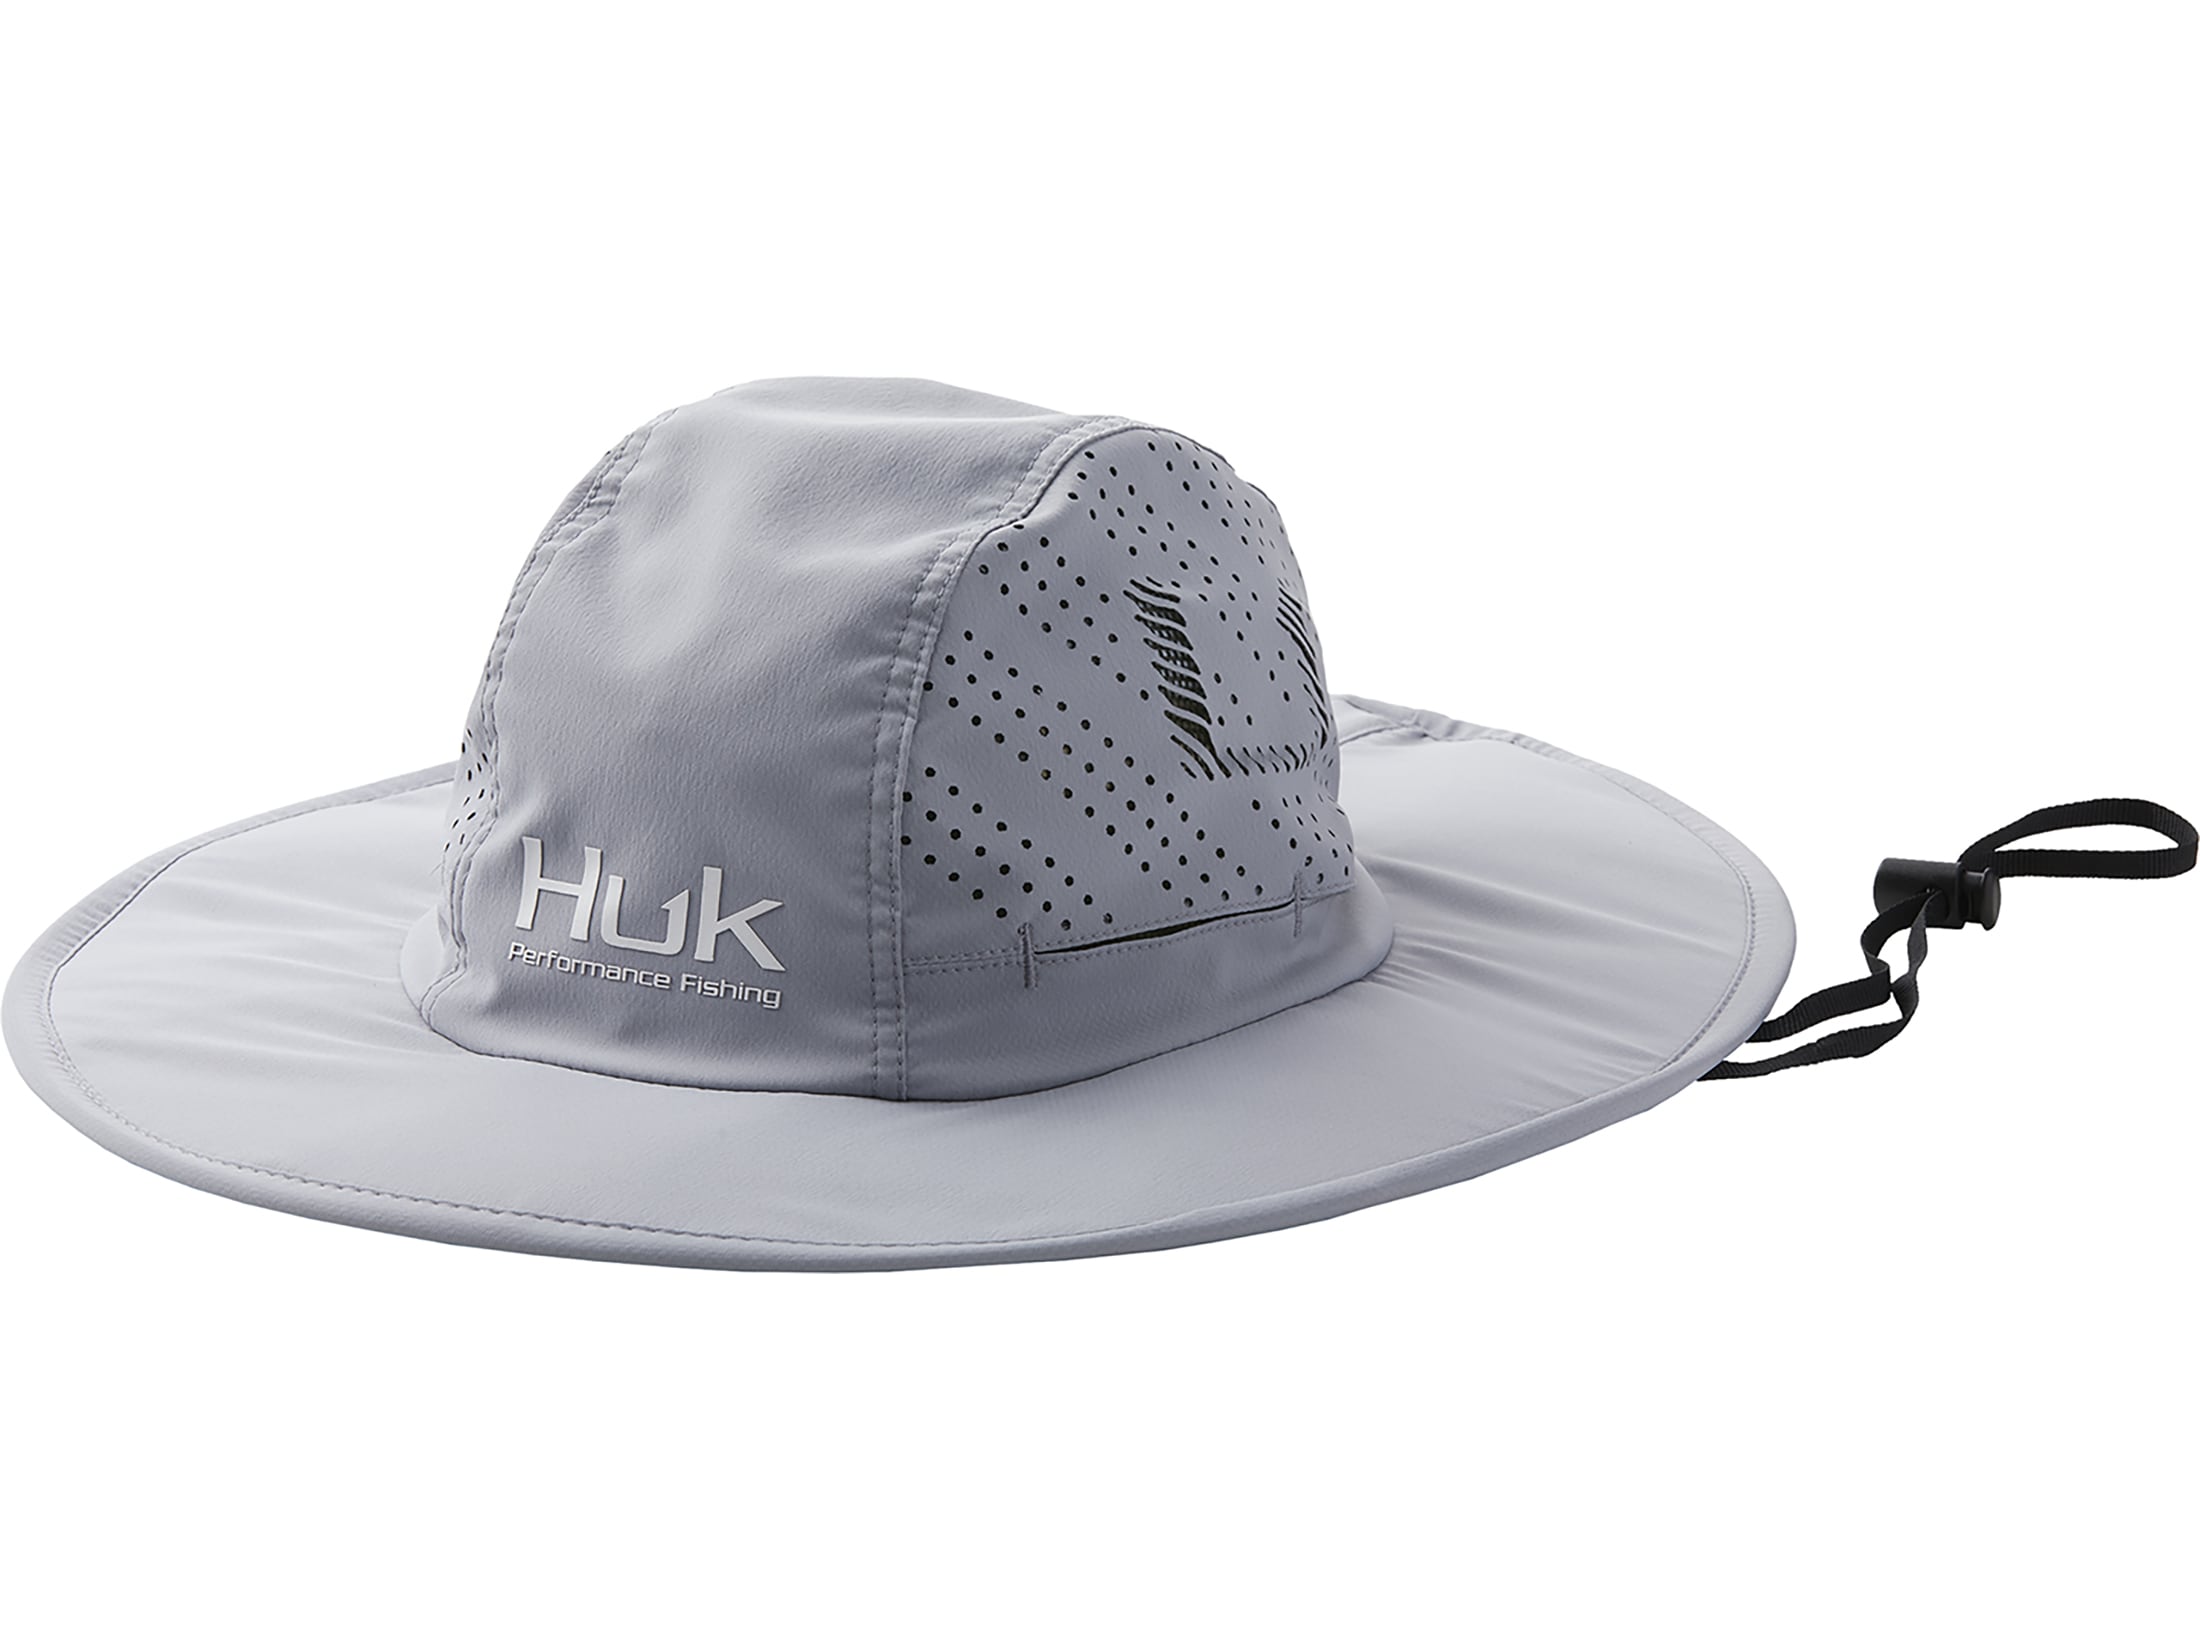 Huk Bucket Hats for Men